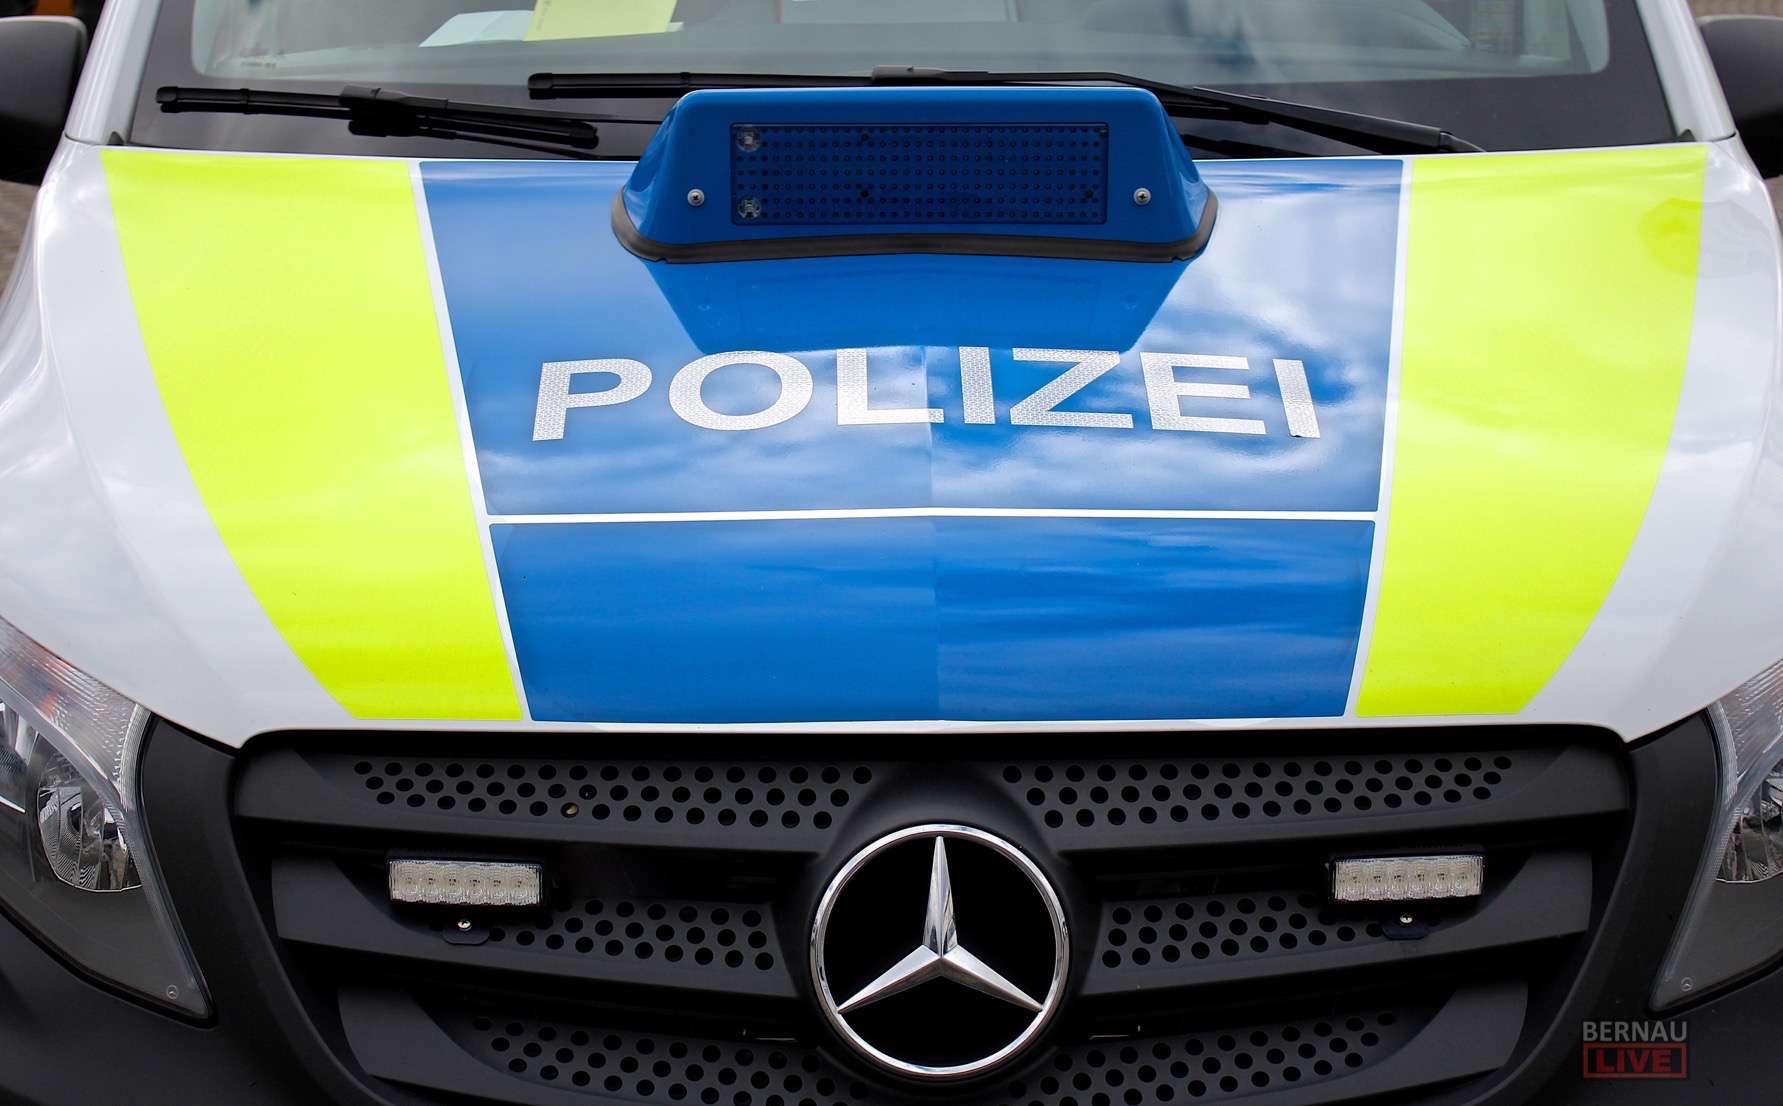 Polizei - Bernau - Barnim - Brandenburg